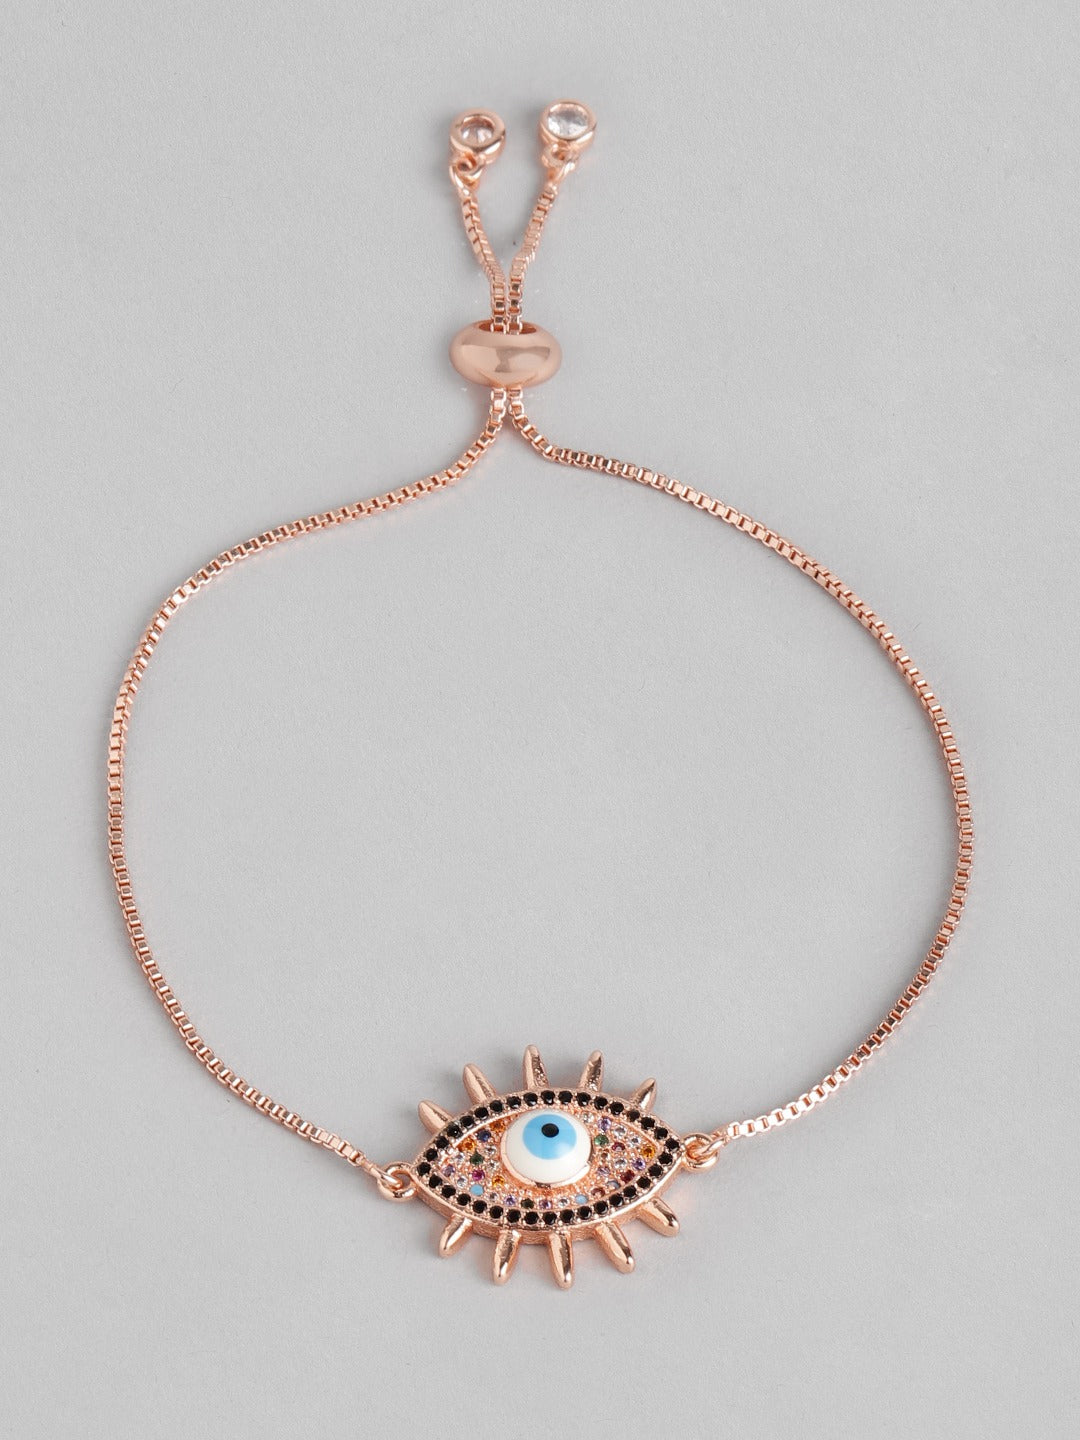 Blueberry rose gold plated Evil eye chain bracelet